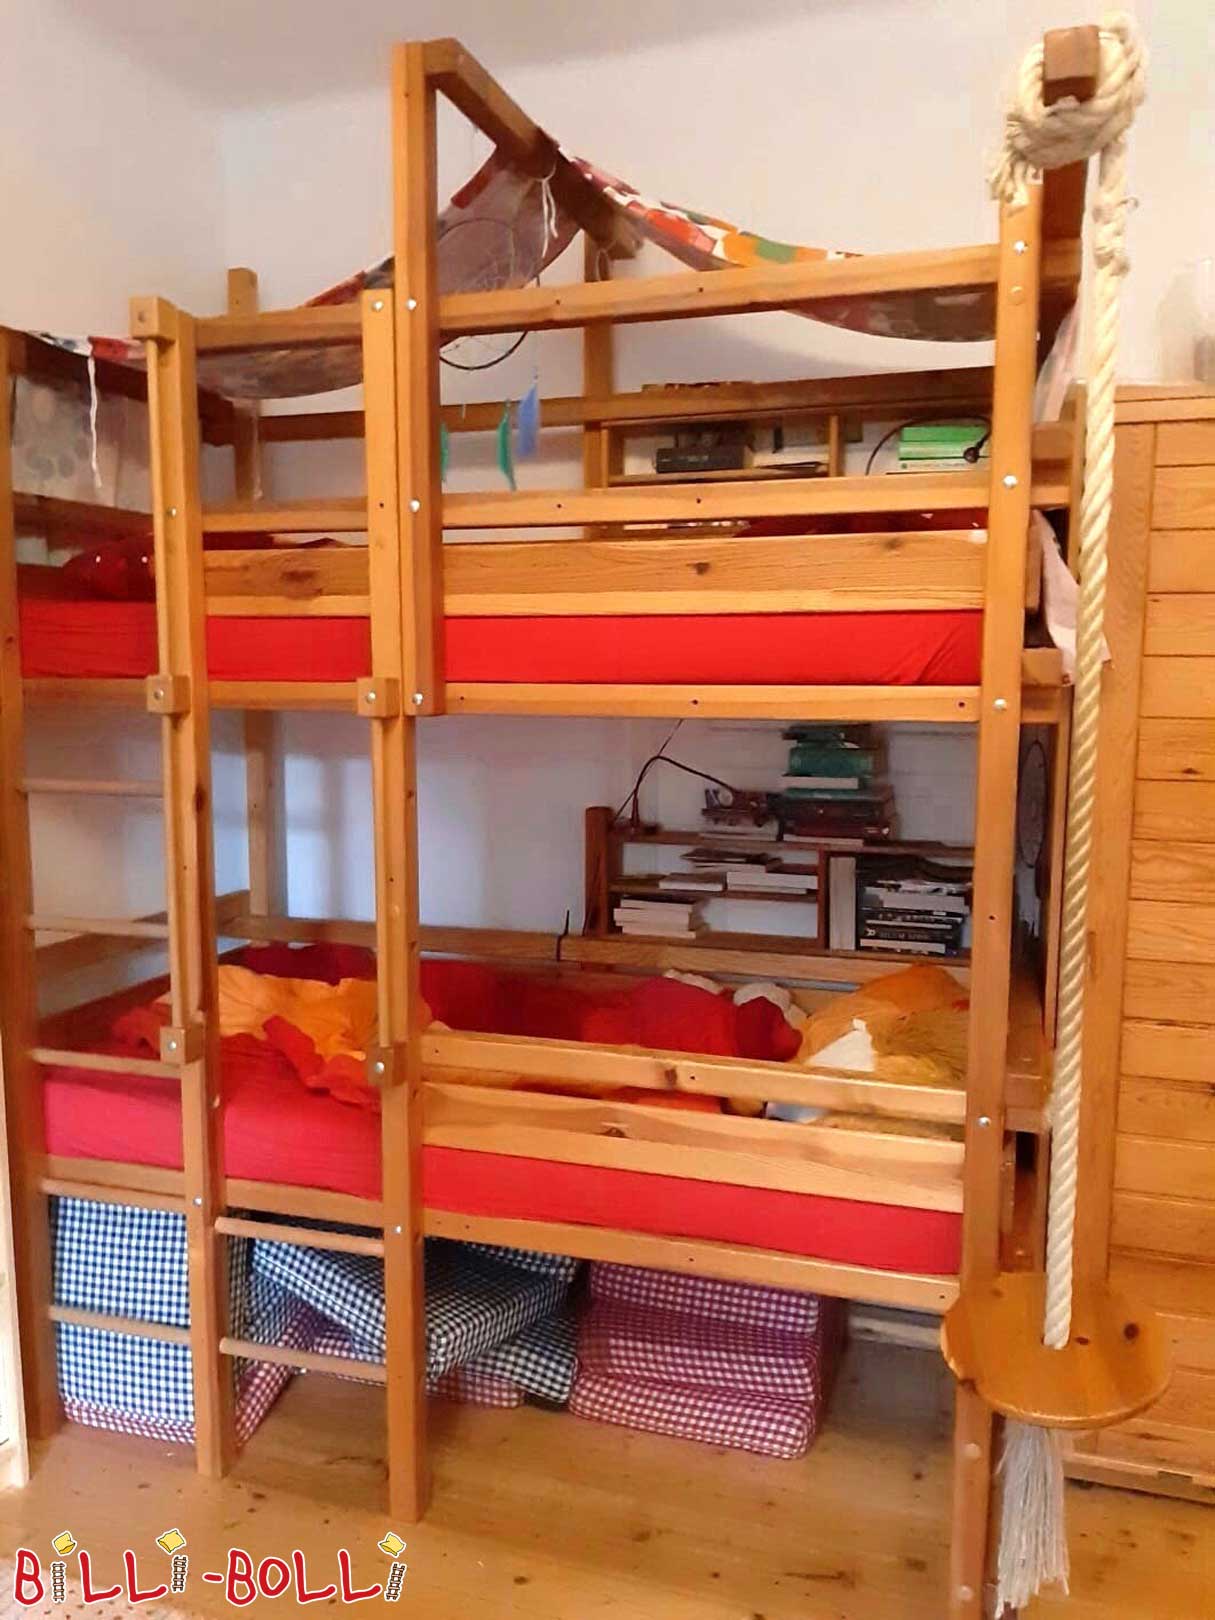 Krevet na kat ekstra visok i raste s djetetom (Kategorija: Korišten krevet u potkrovlju)